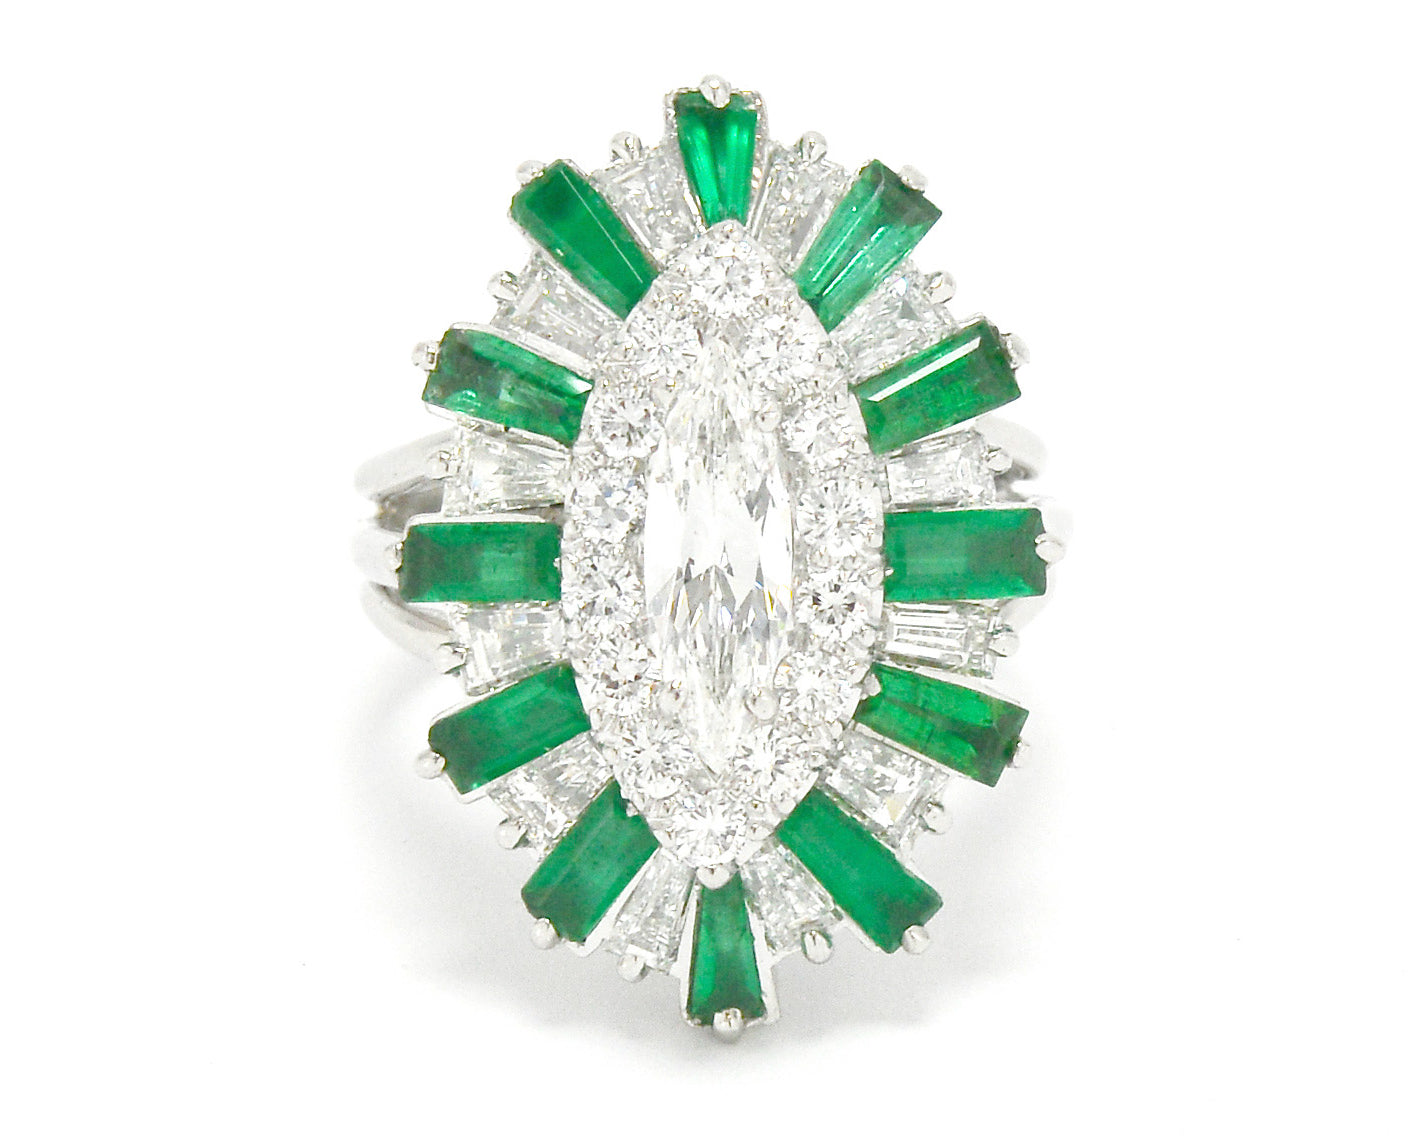 Bel Air Marquise Diamond 2.70 Carat Emerald Cocktail Ring Ballerina Platinum